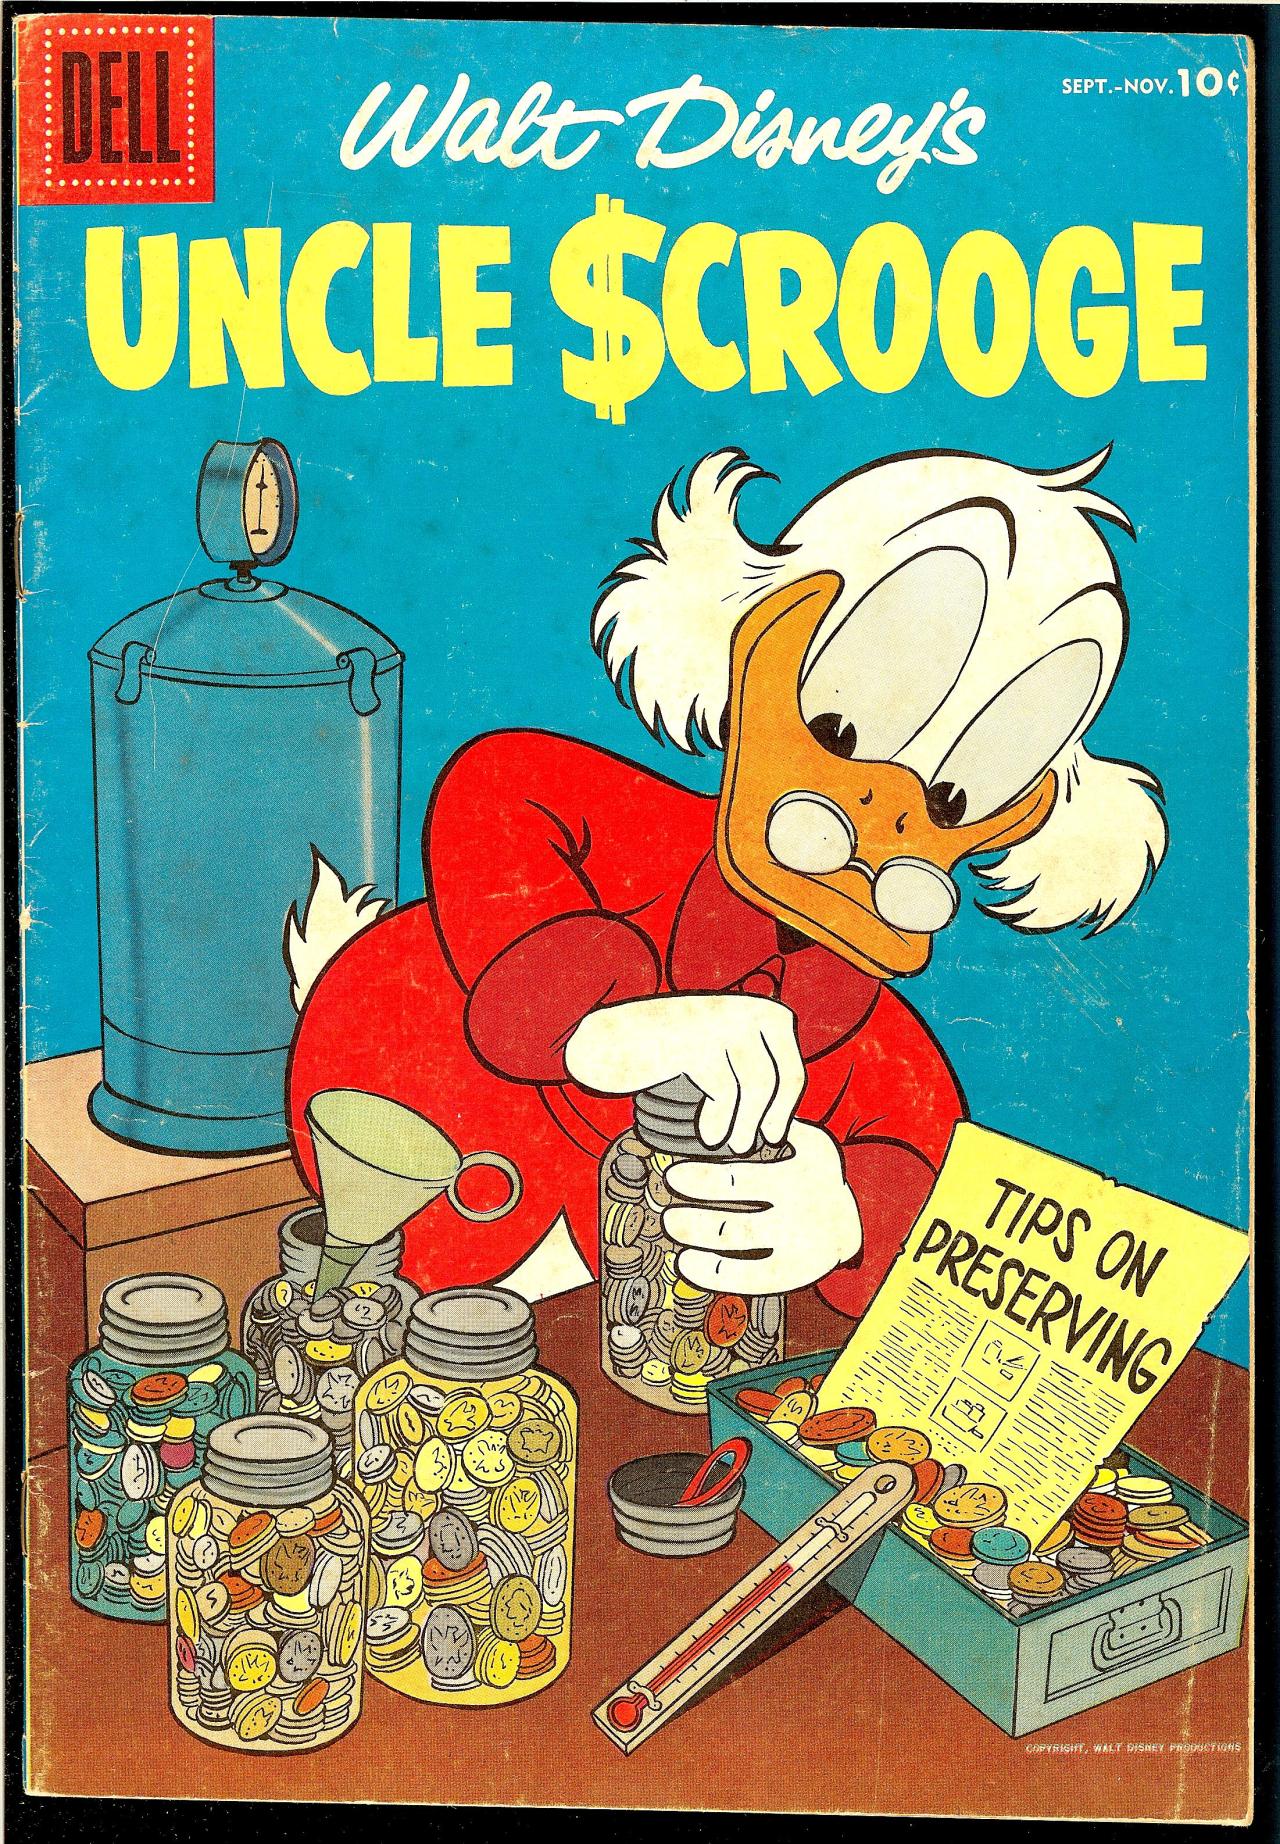 browsethestacks:
“Vintage Comic - Uncle Scrooge #015
Pencils: Carl Barks
Inks: Carl Barks
Dell (Sept-Nov1956)
”